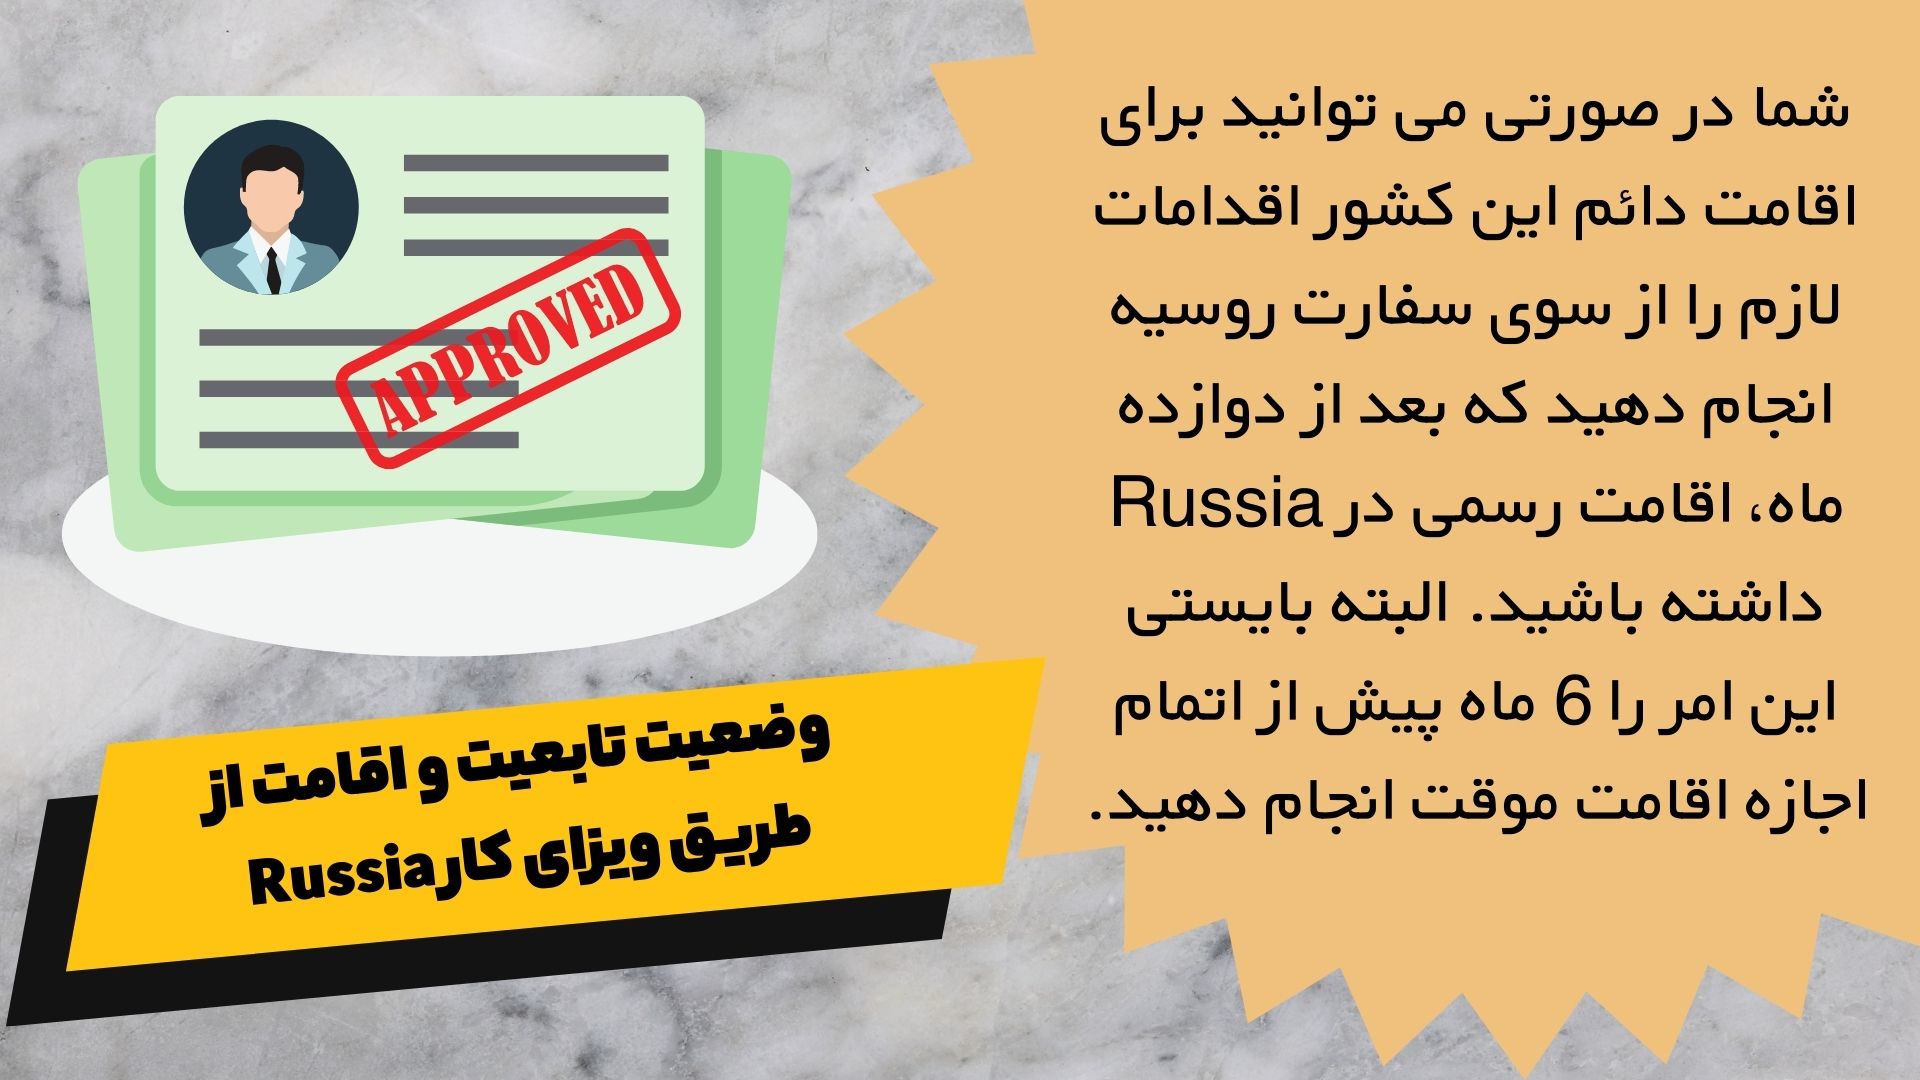 وضعیت تابعیت و اقامت از طریق ویزای کار Russia